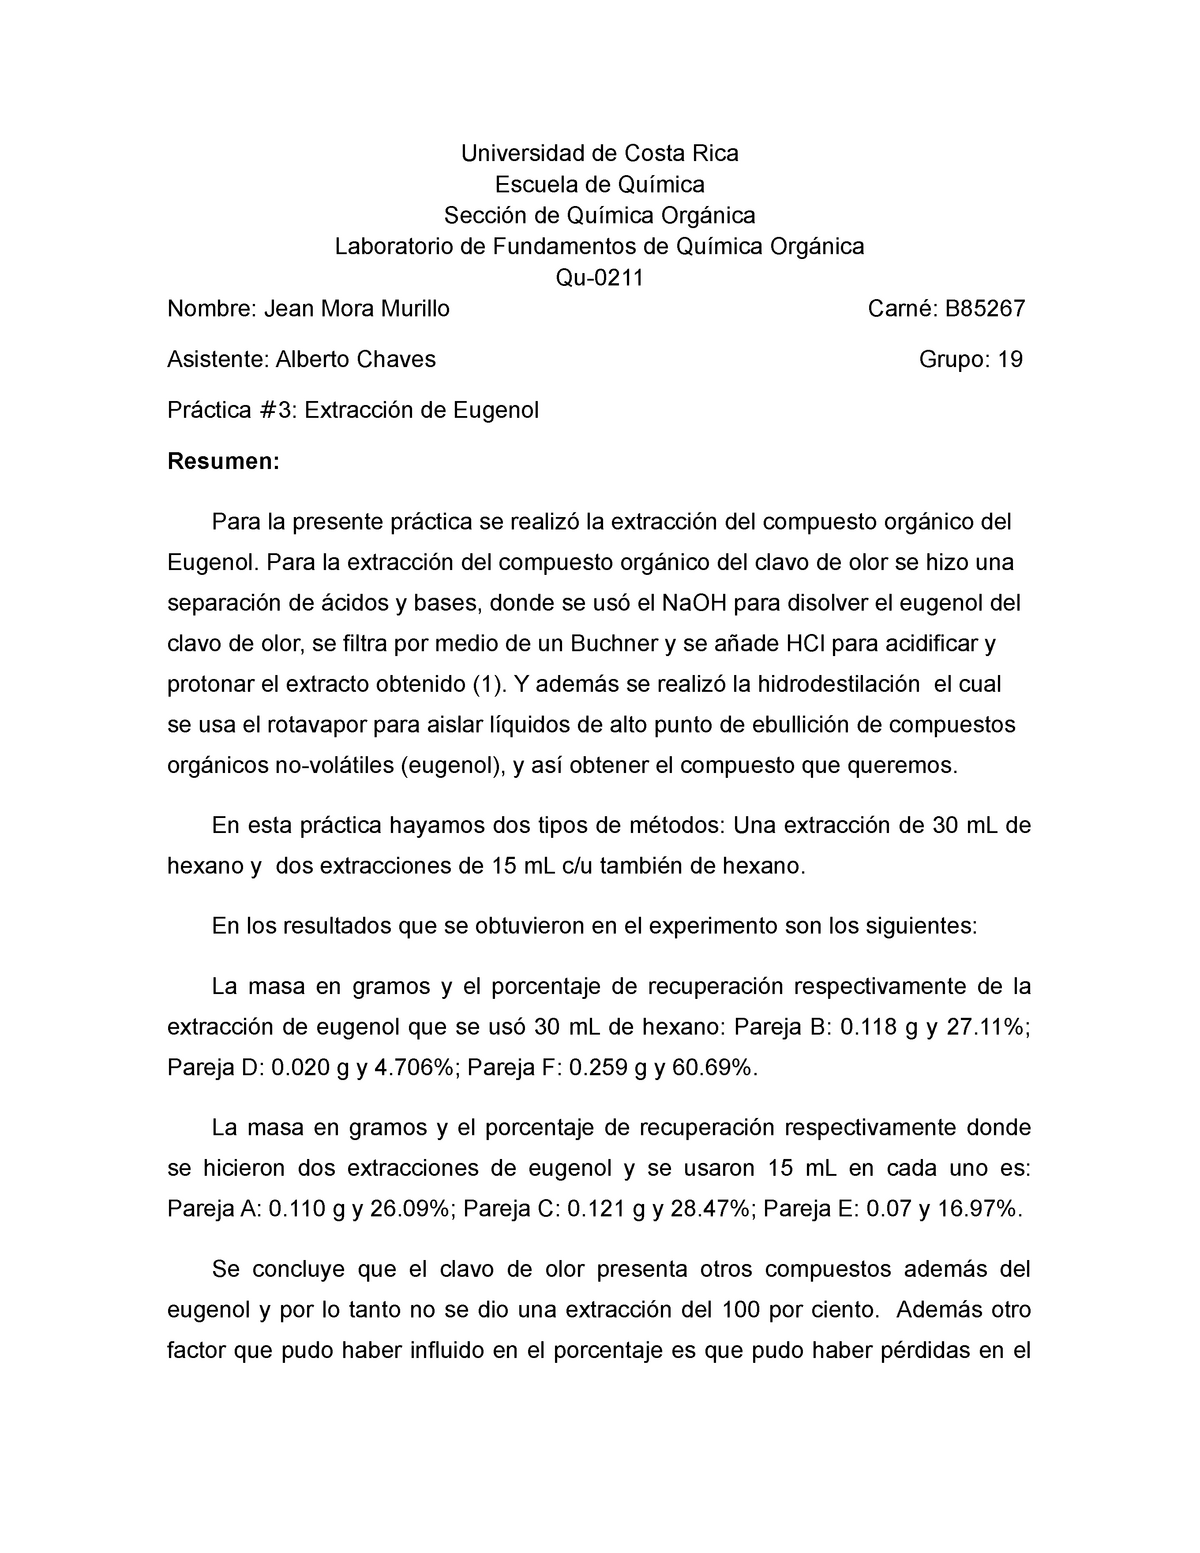 Reporte Practica 3 - Extracción de Eugenol - Universidad de Costa Rica ...